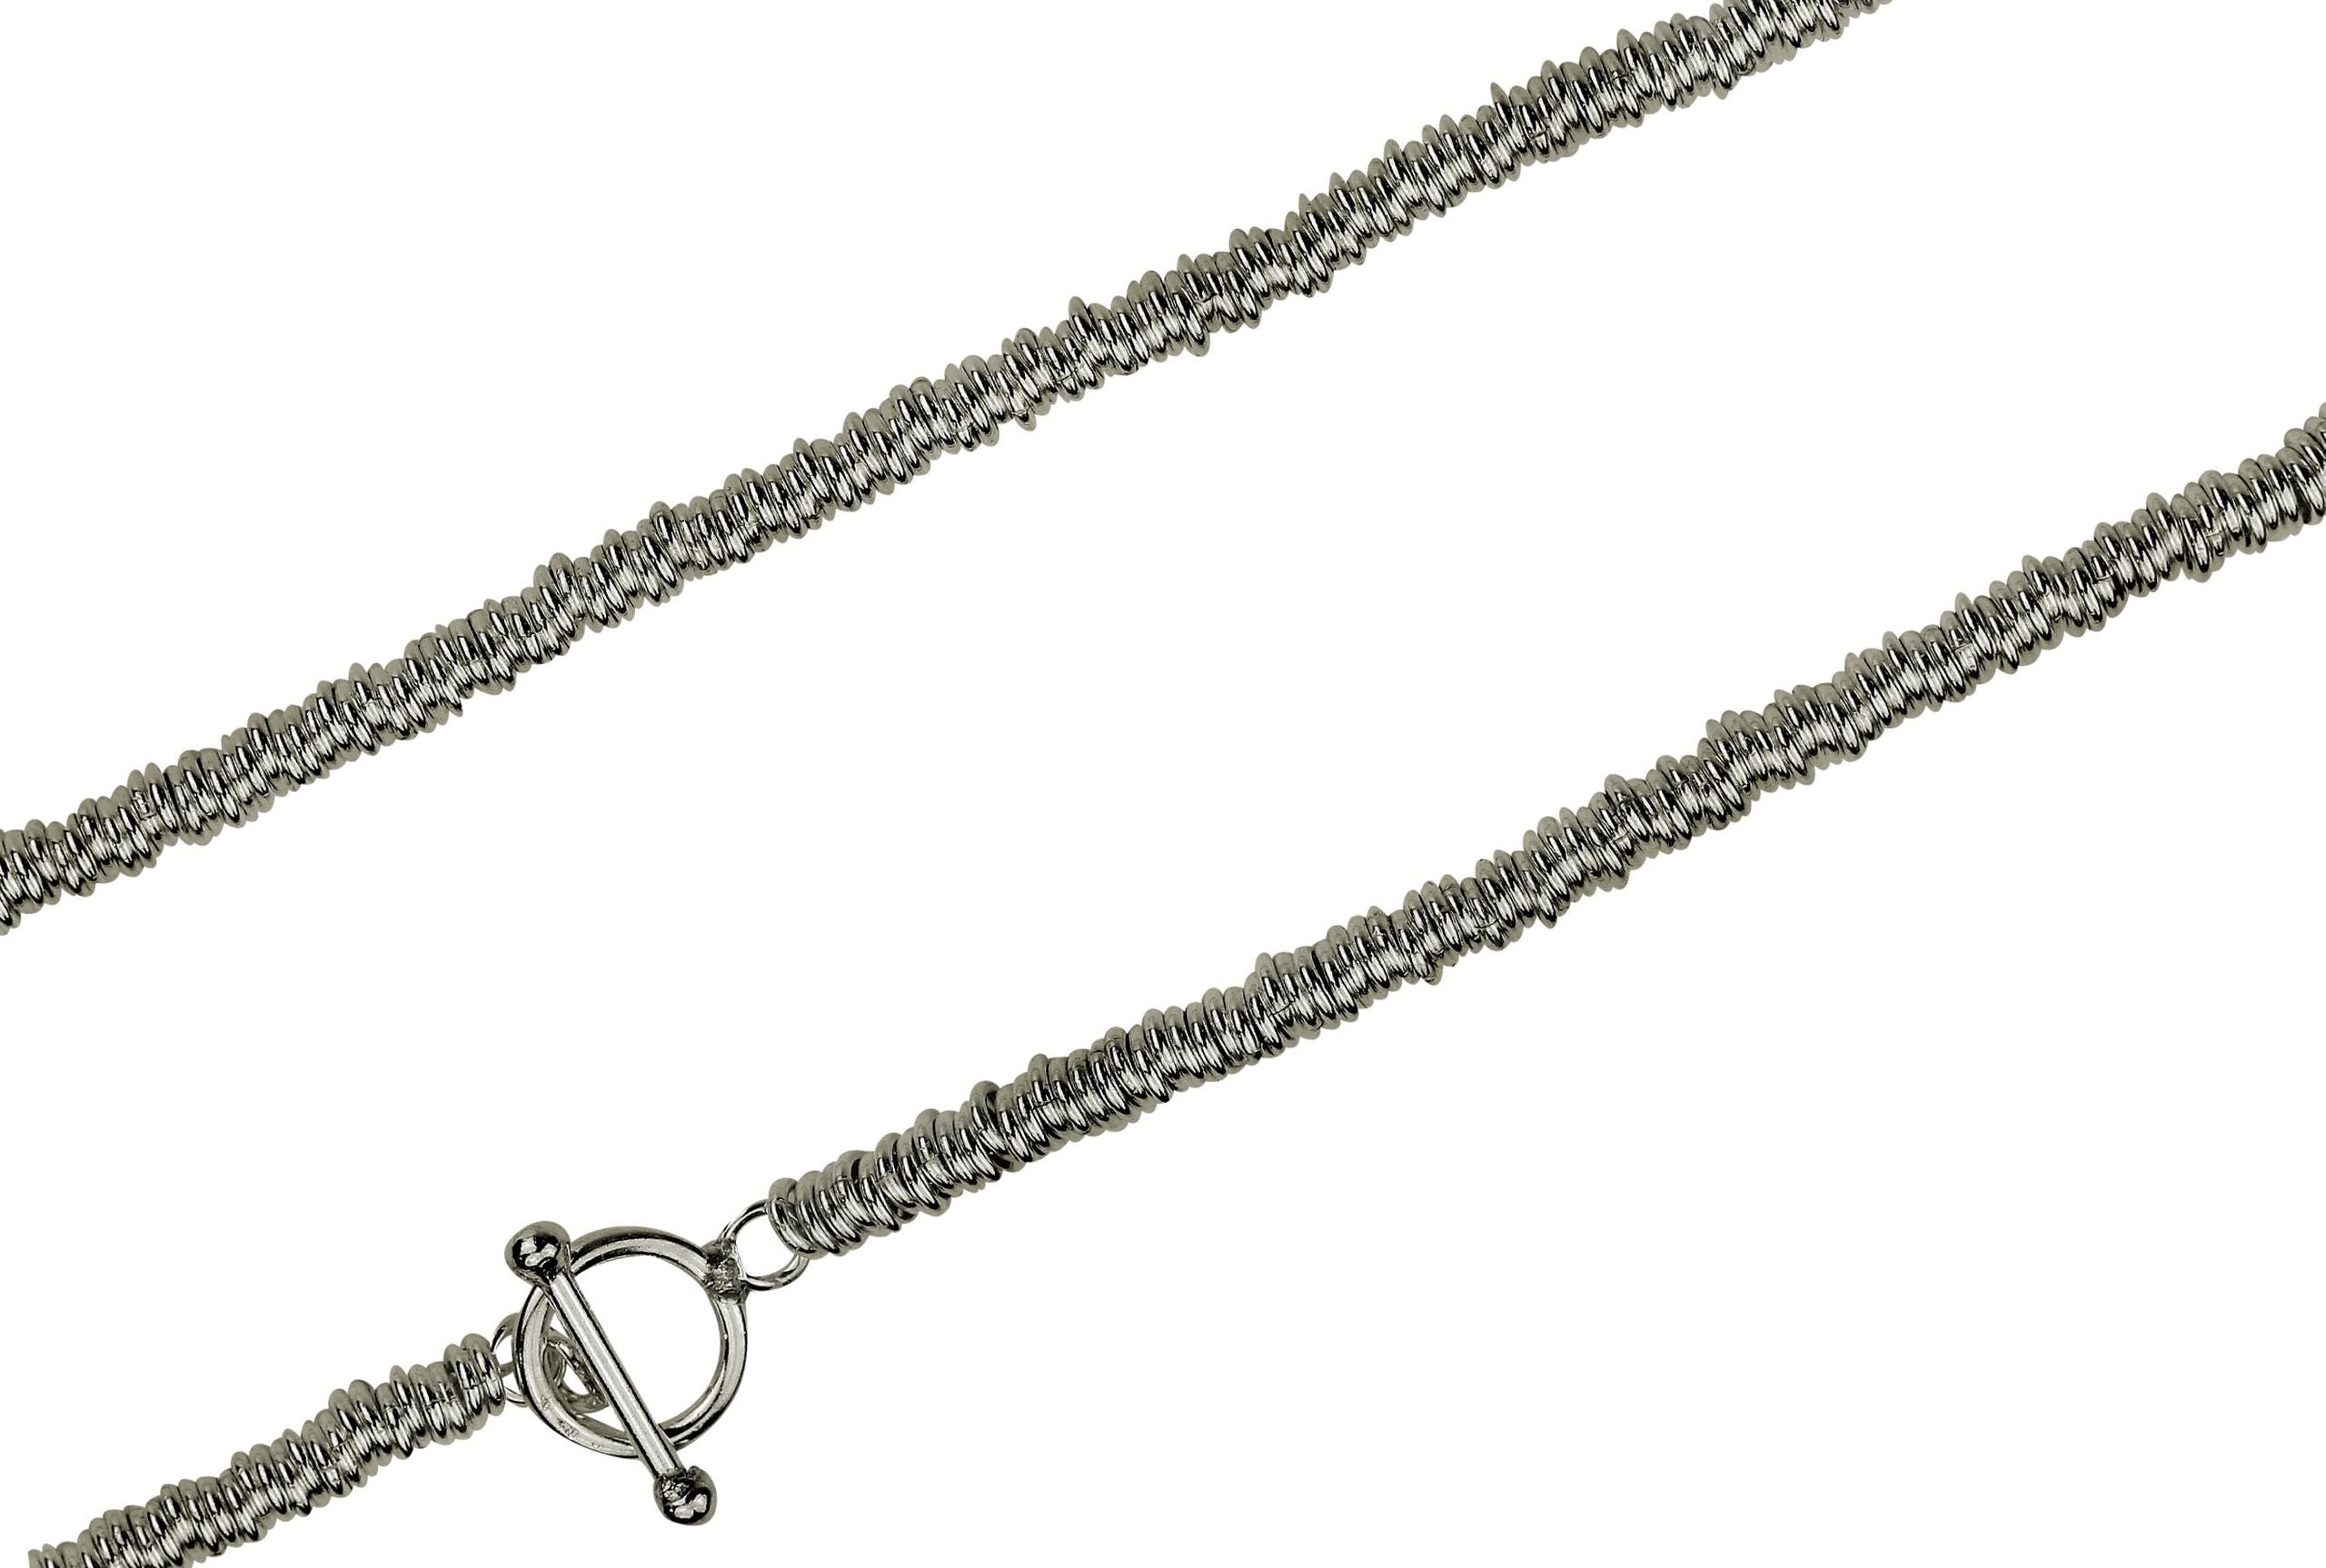 Eine Kette für Damen bestehend aus vielen kleinen Ringen aus Silber mit einem dekorativen Verschluss.